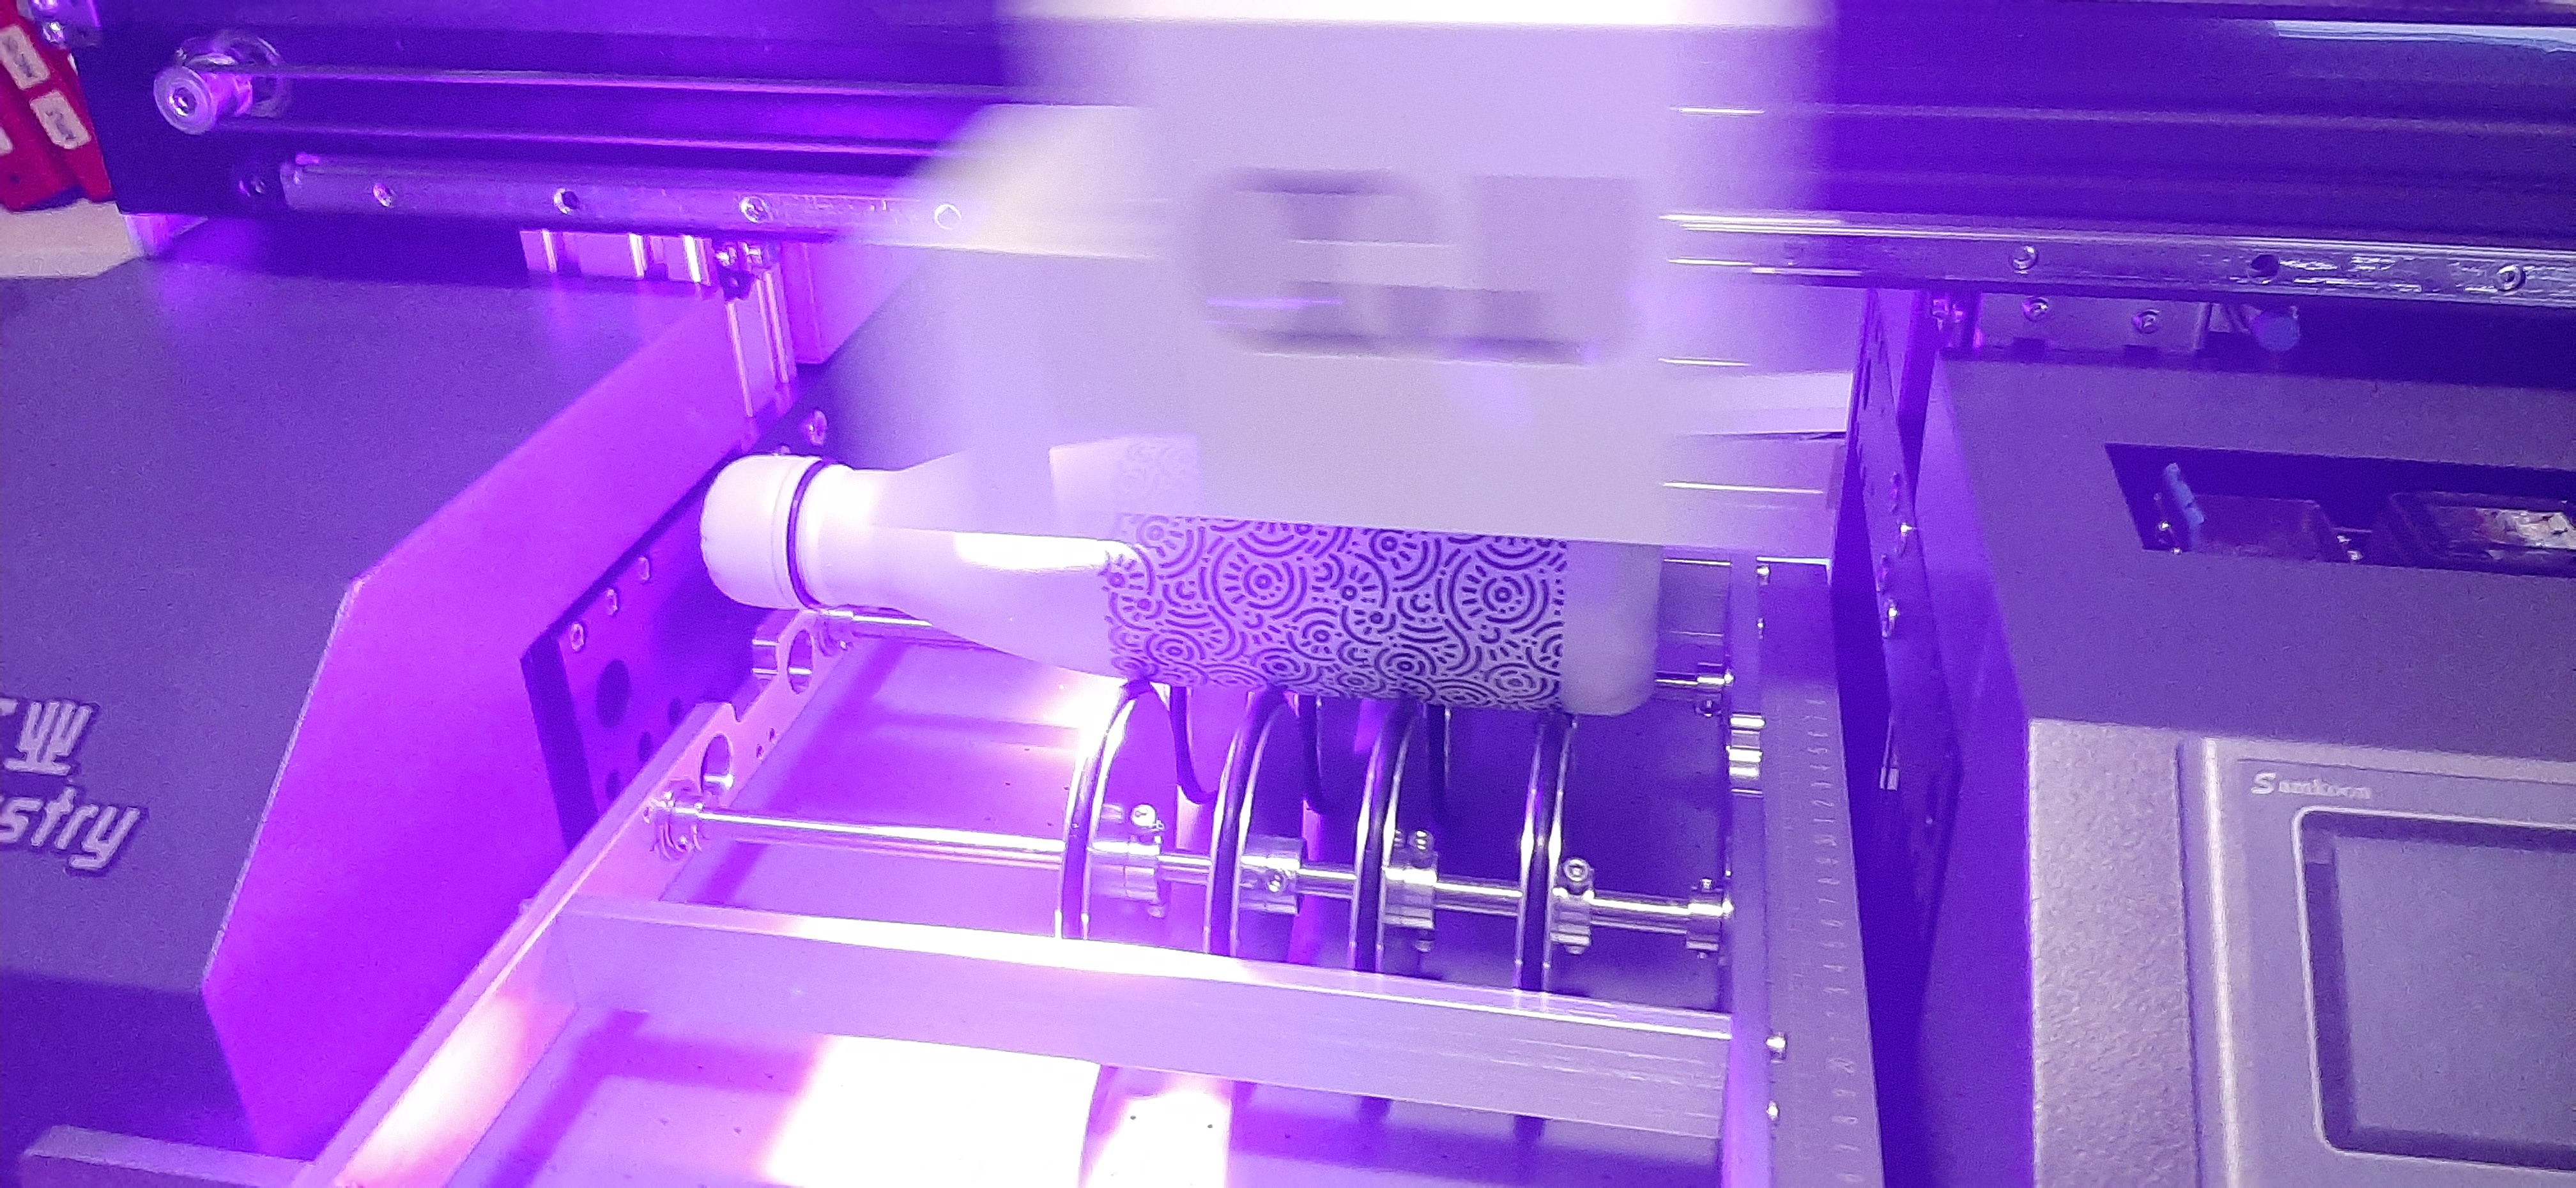 Bottiglie in acciaio personalizzabili con stampa a colori a 360°